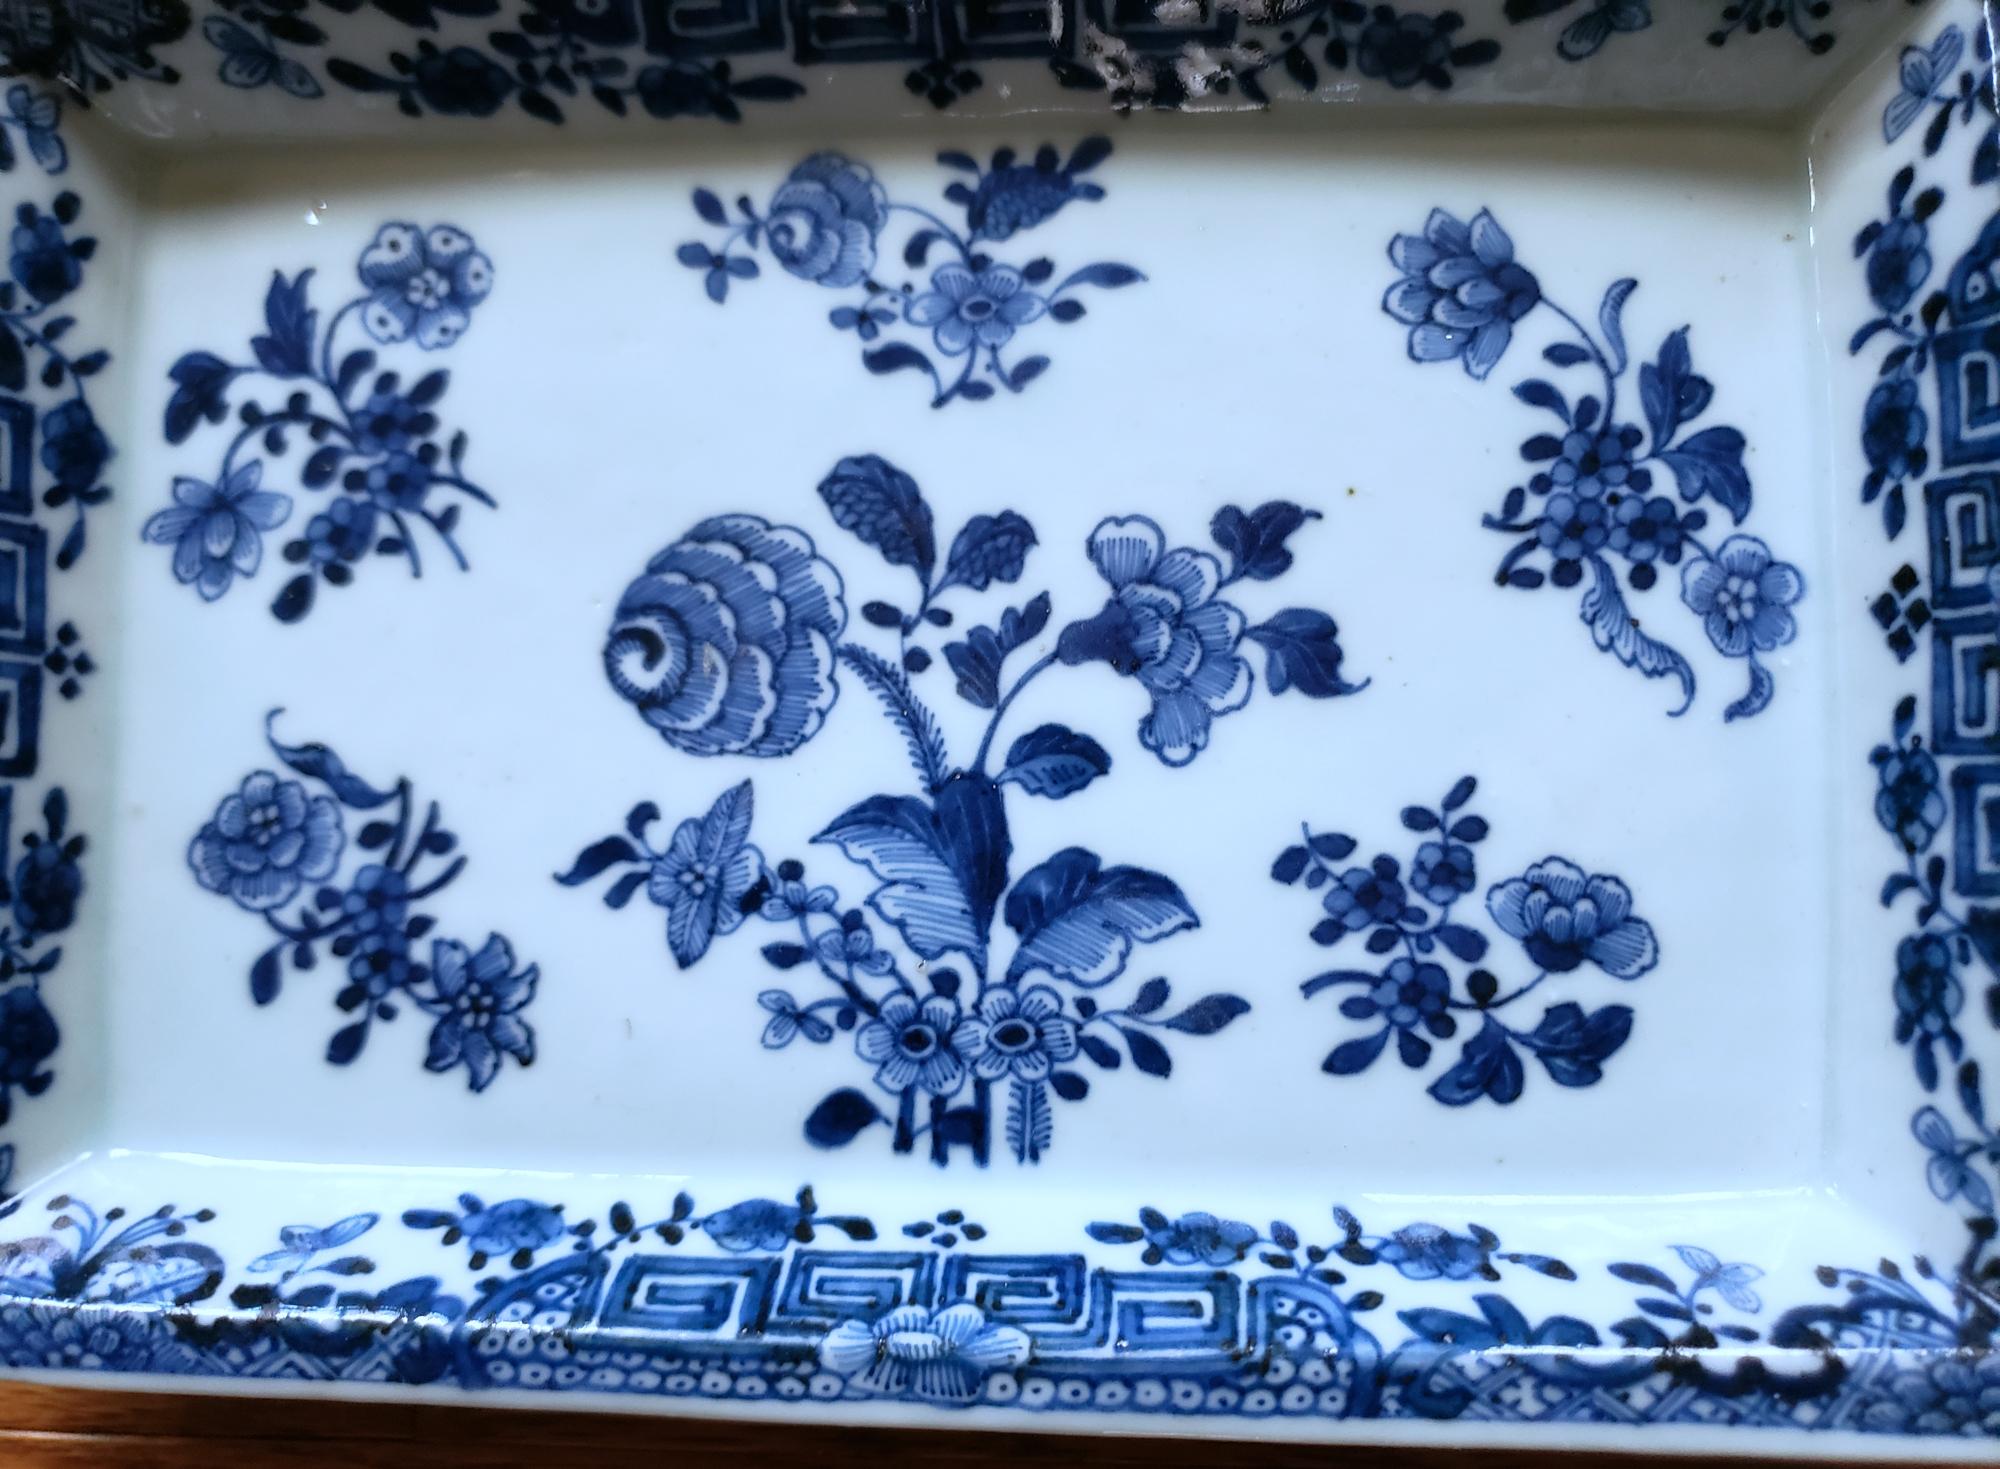 Chinese Export Porcelain Underglaze Blue & White Rectangular Botanical Dishes 8